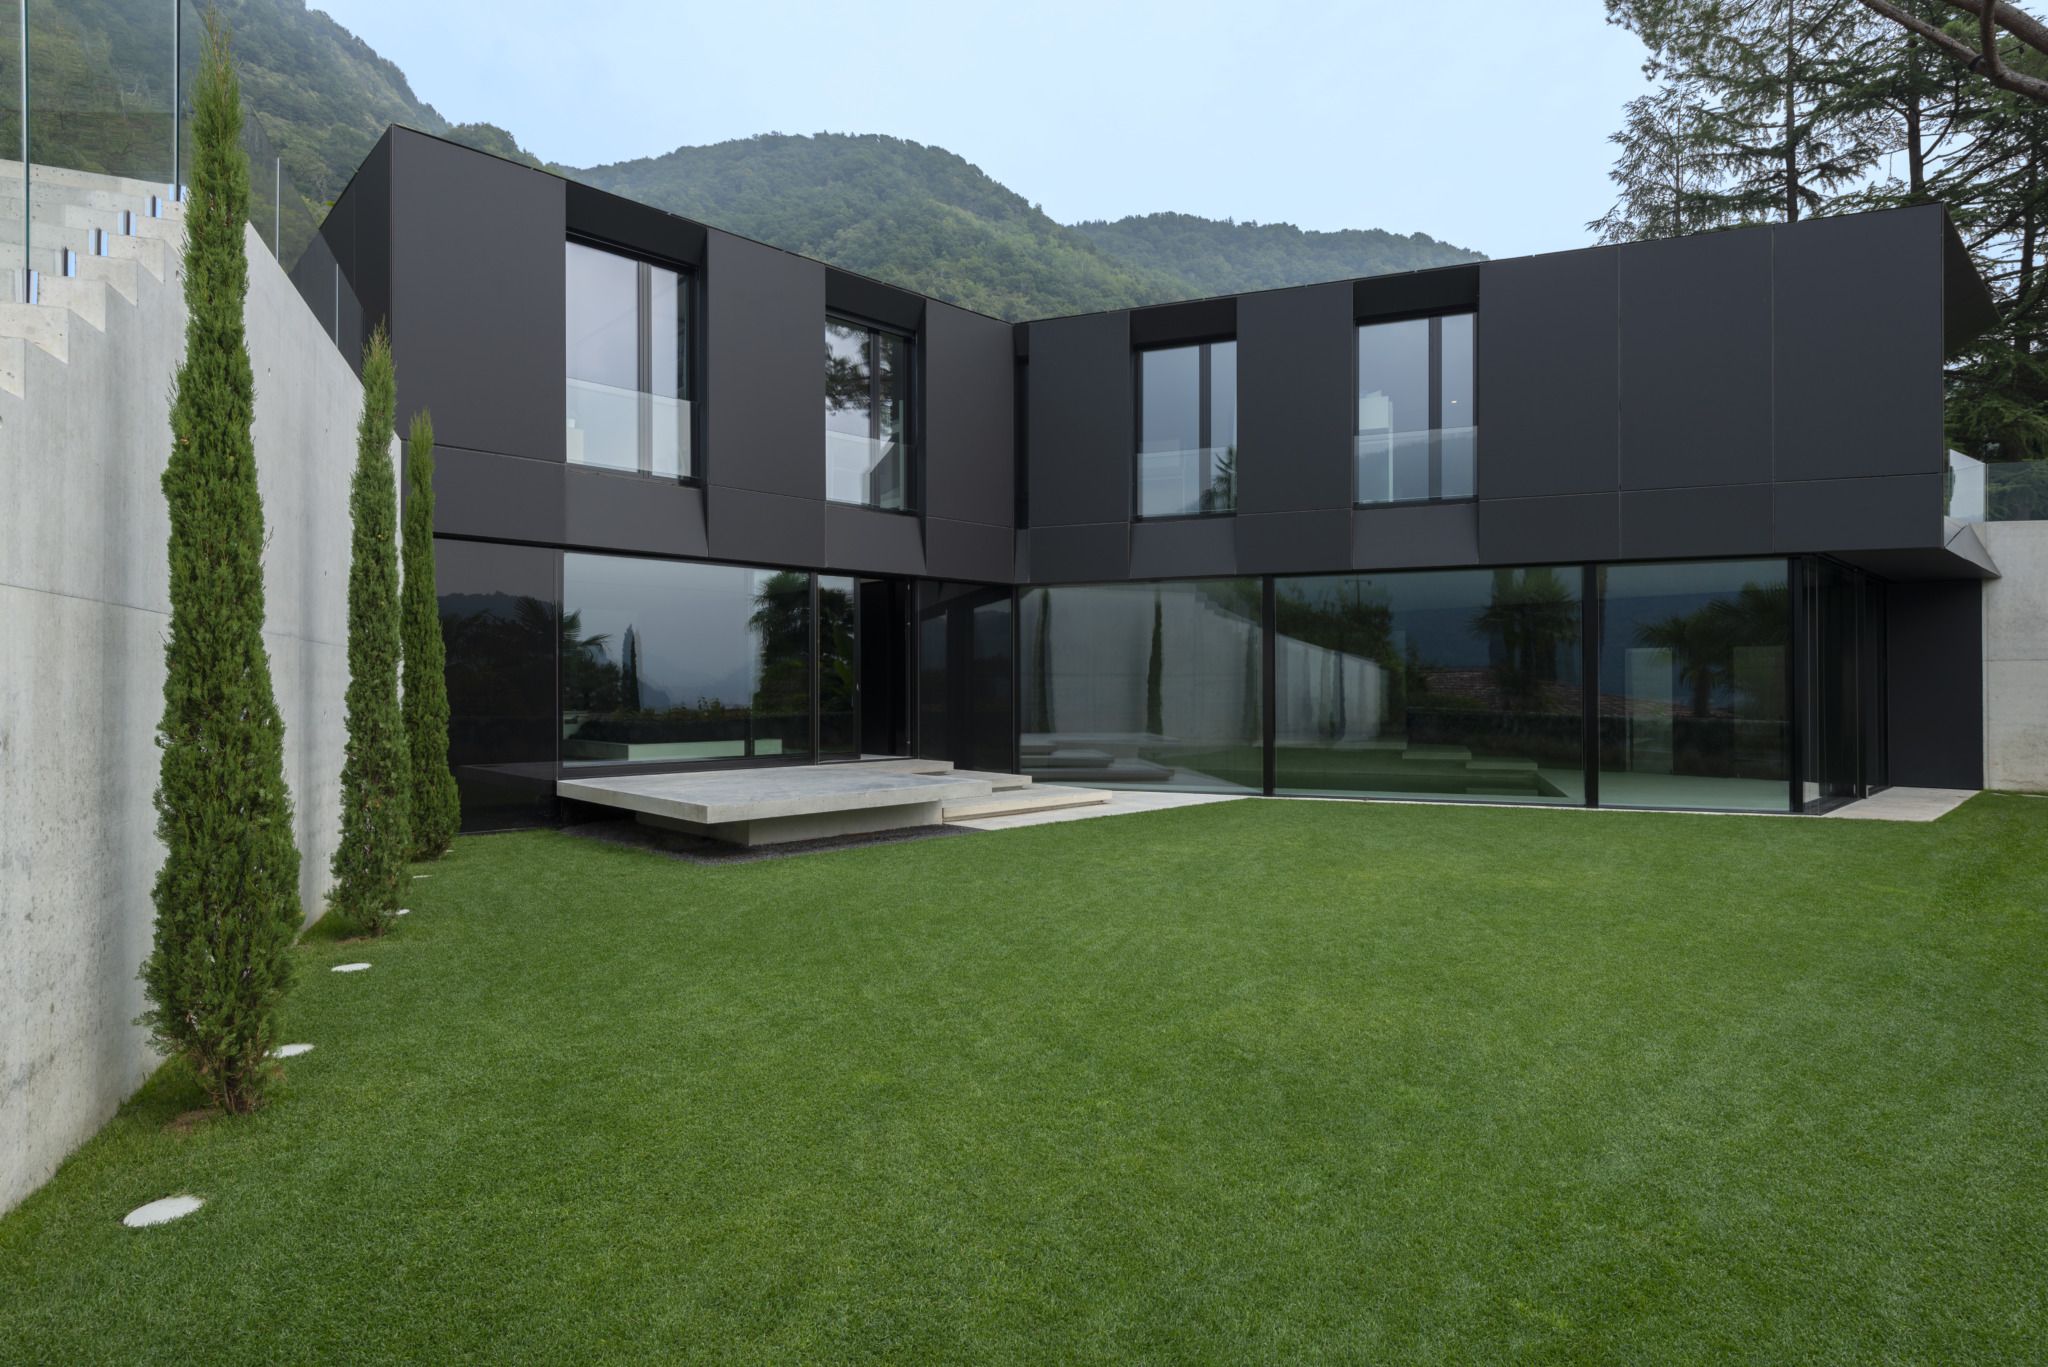 Villa in Morcote, project by ZMB architettura SAGL, furniture by molteni&C